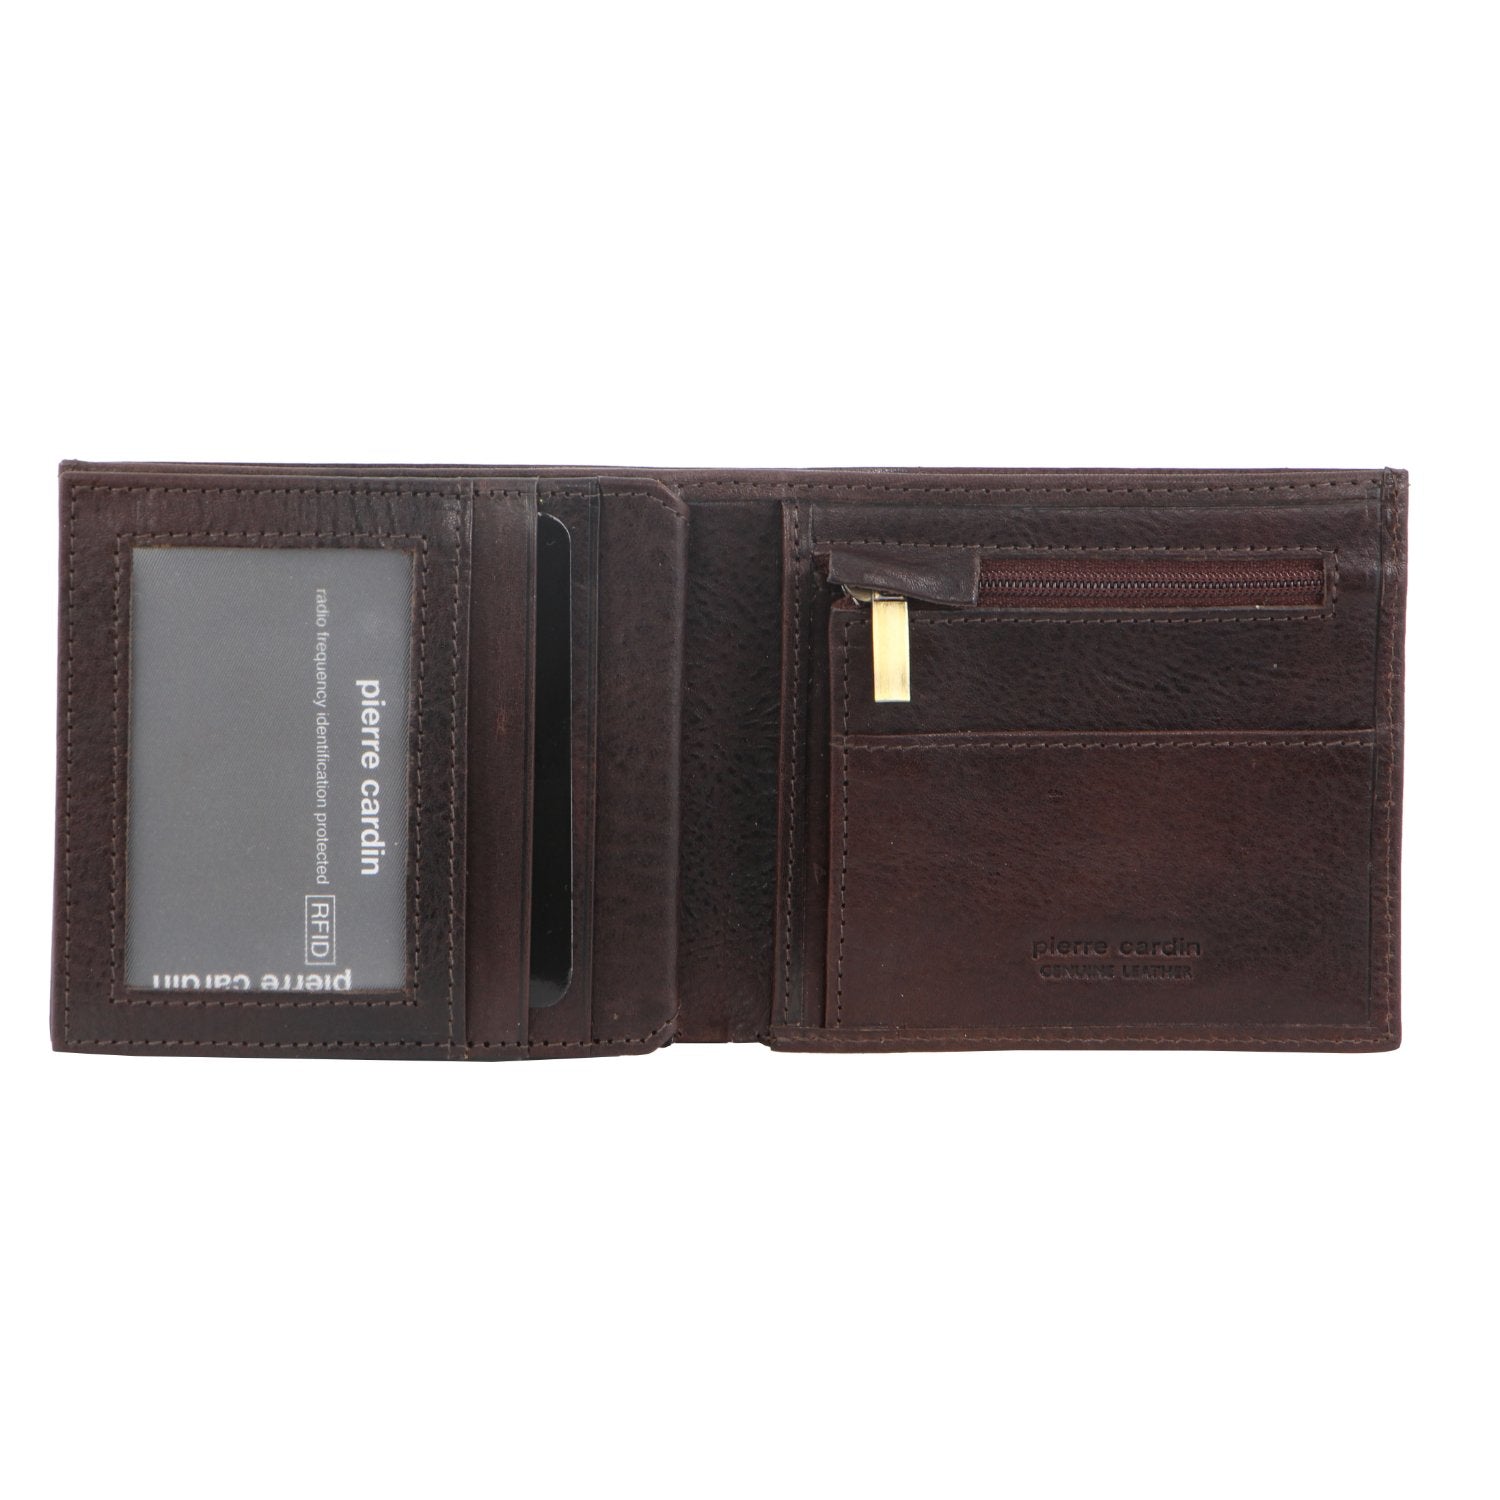 Pierre Cardin Italian Leather Tri-Fold Men's Wallet in Chocolate